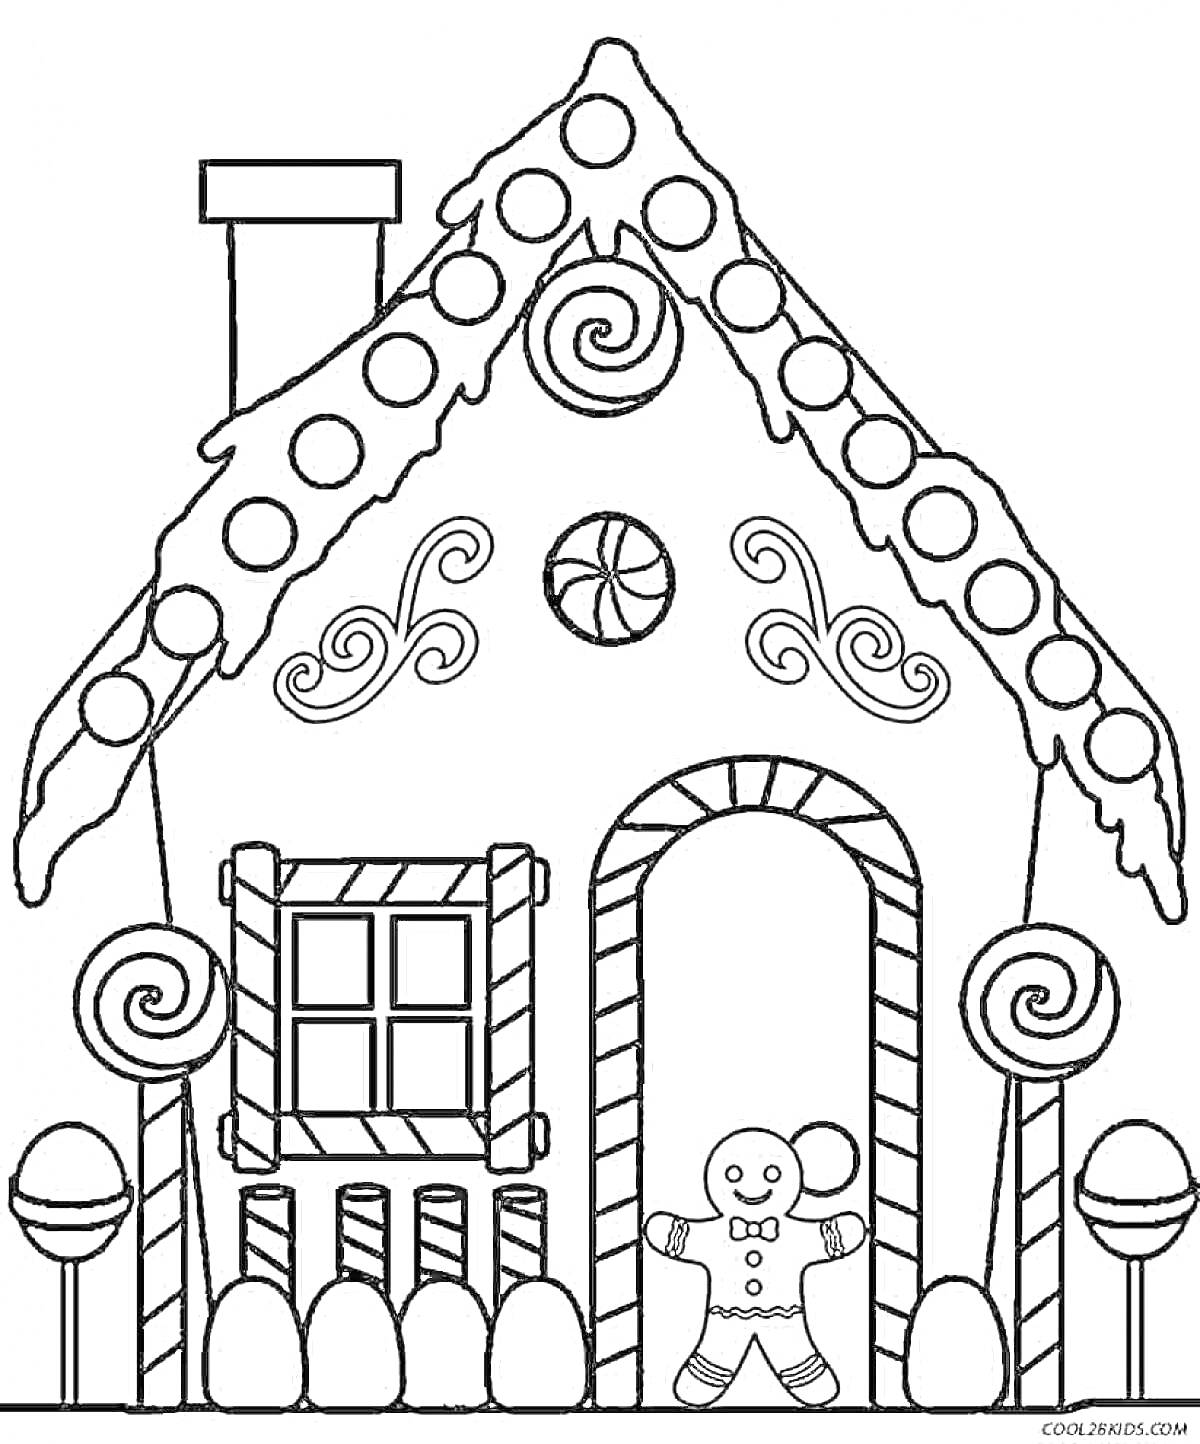 Раскраска Пряничный домик с конфетами, леденцами, печеньем и пряничным человечком